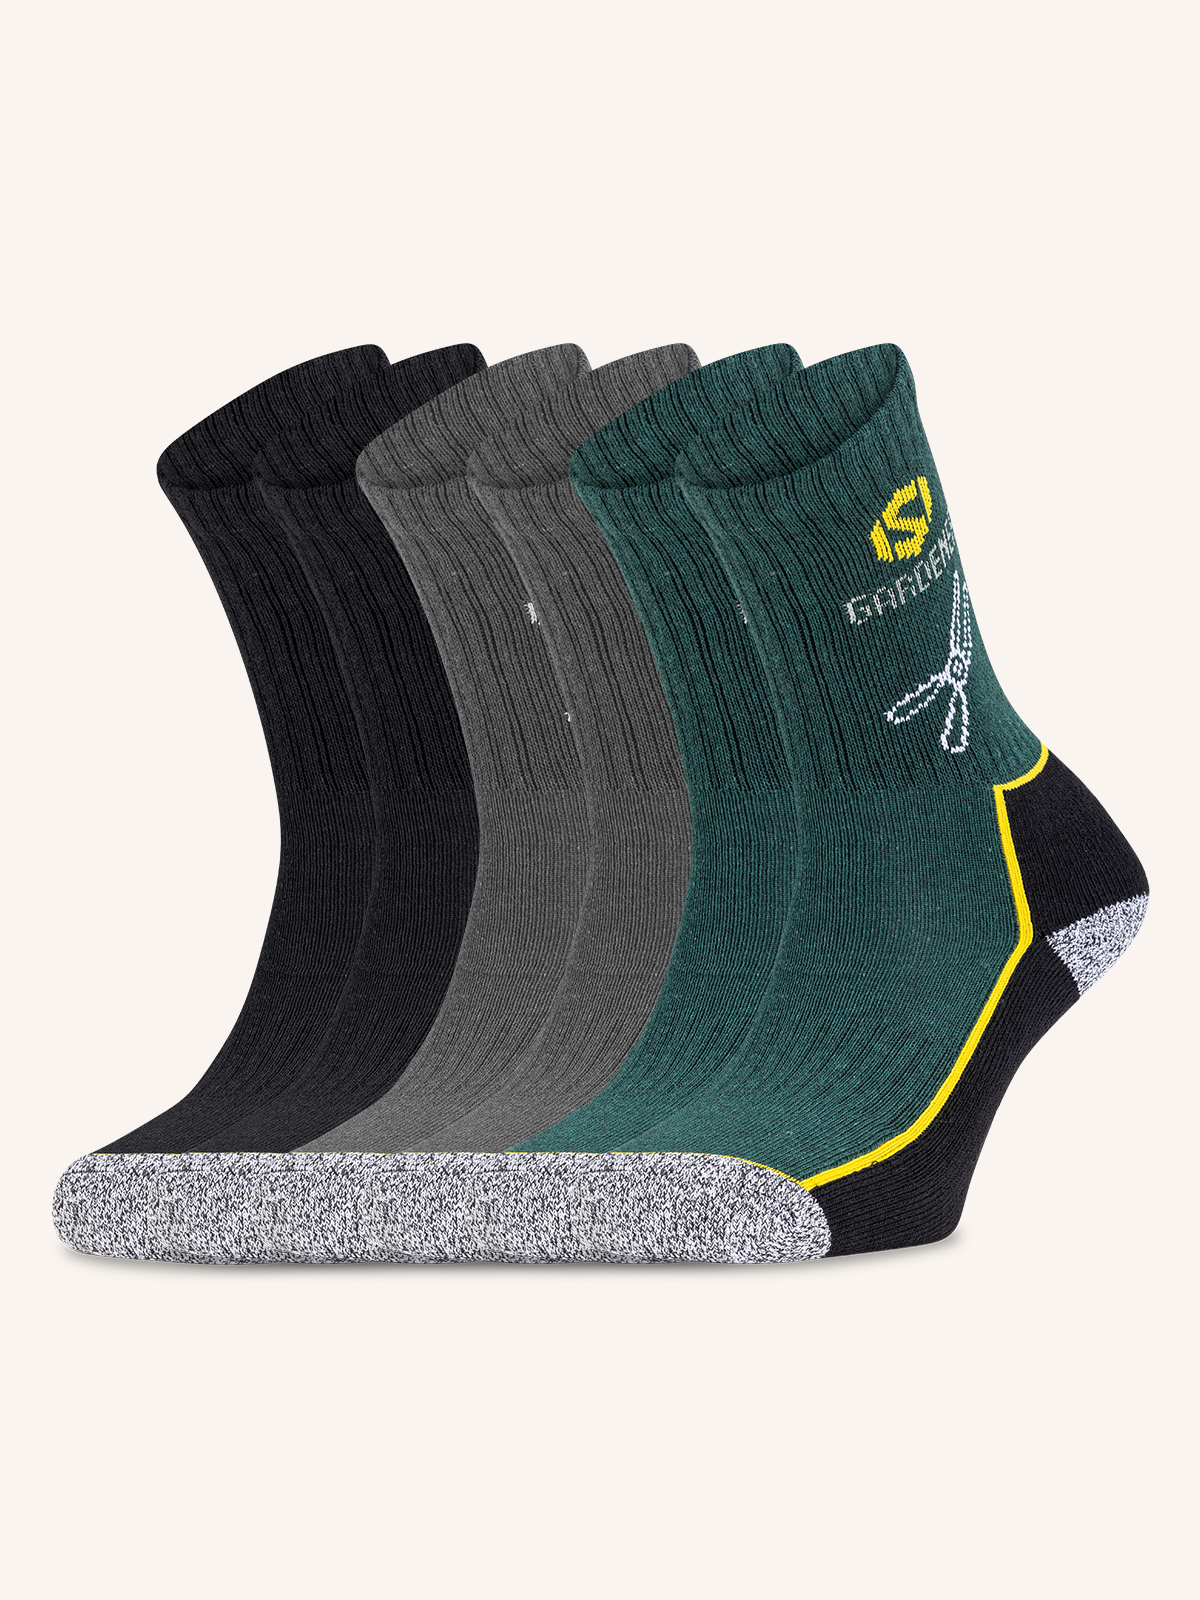 Garden Long Work Sock for Men | Plain Color | Pack of 6 Pairs | JOB 13